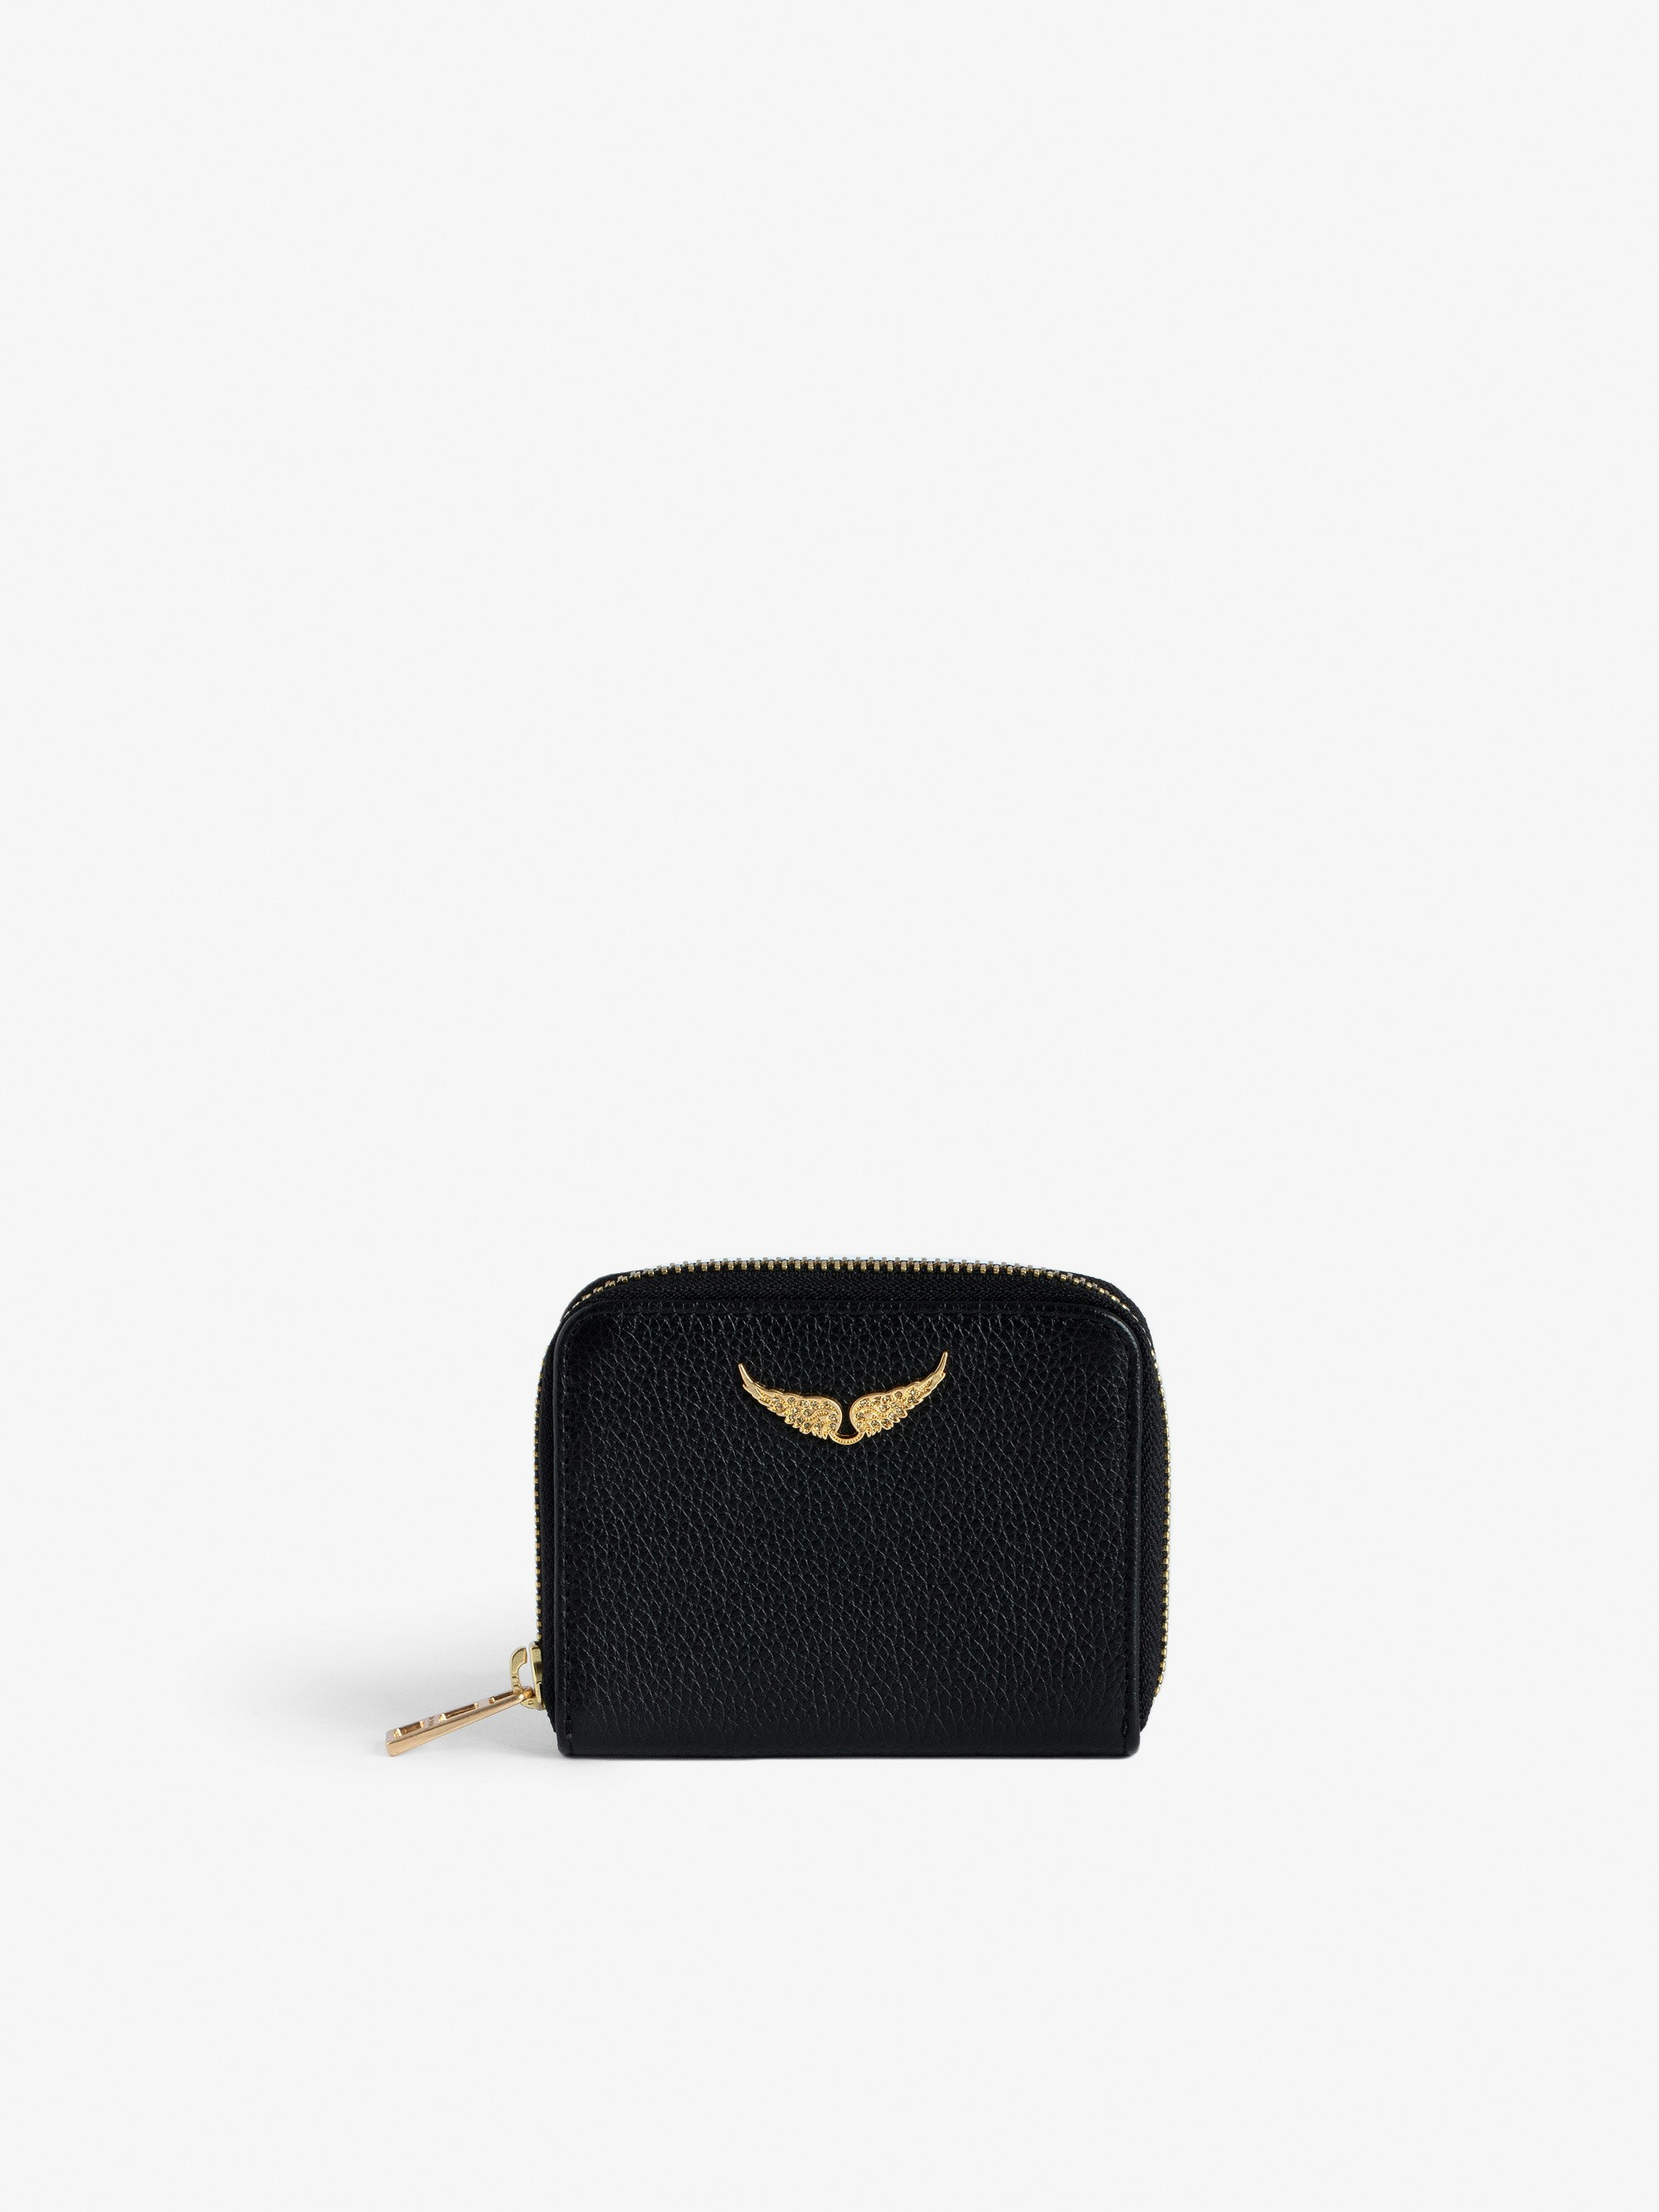 Geldbörse Mini ZV - Schwarze Brieftasche aus genarbtem Leder mit goldenem Flügel-Charm aus Strass für Damen.